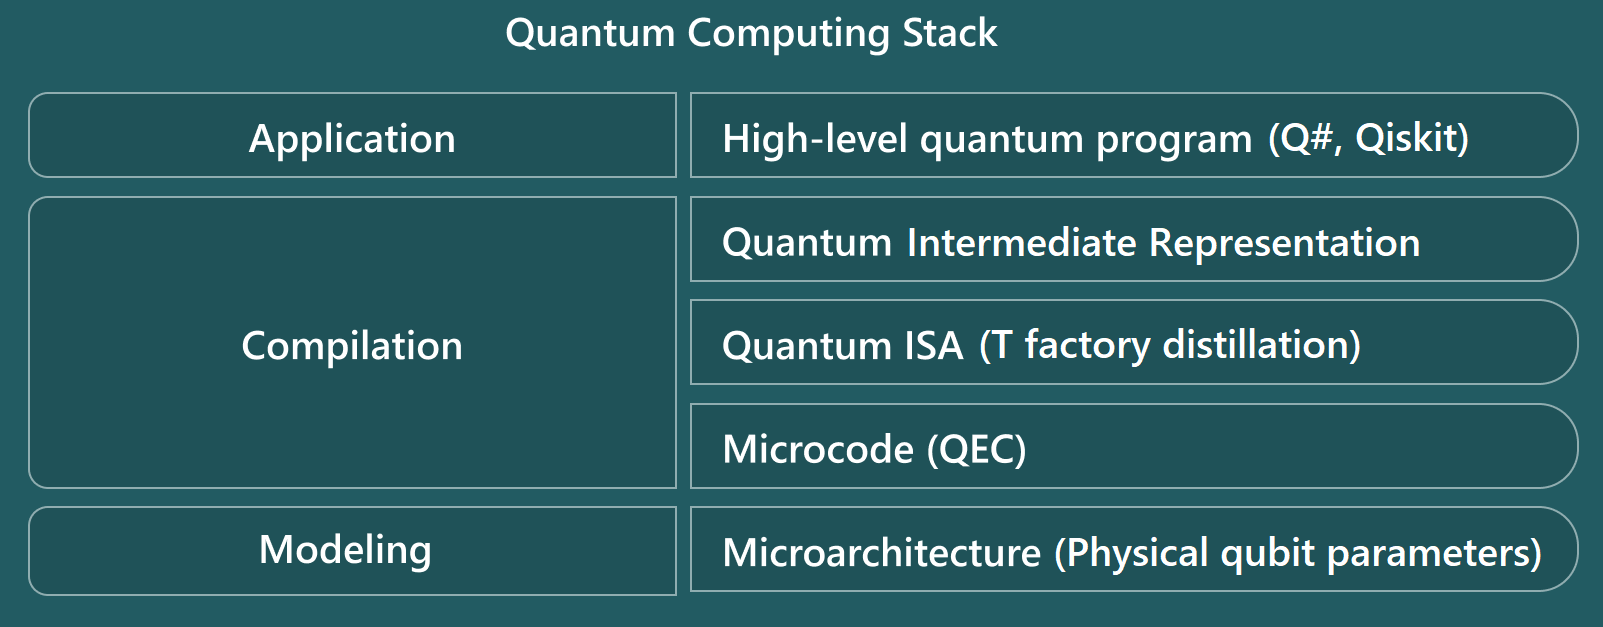 Diagram met de niveaus van de kwantumcomputingstack van de Resource Estimator.